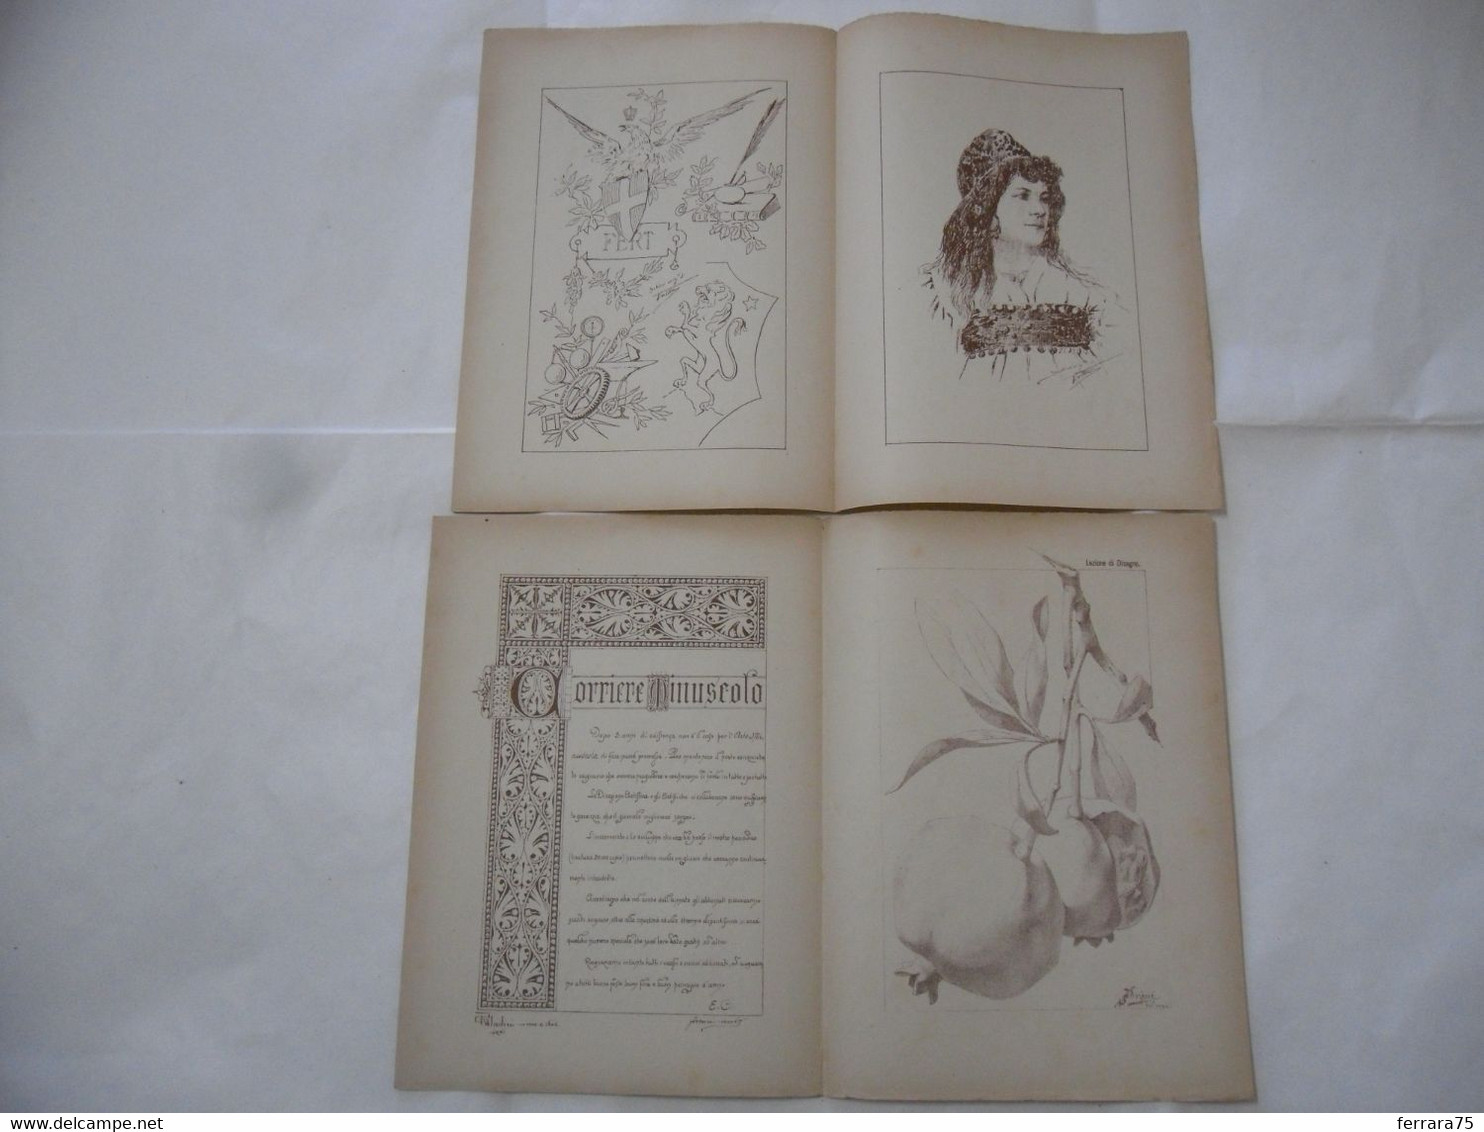 ARTE MINUSCOLA LEZIONE DI DISEGNO ARTE MODA ARALDICA LIBERTY SCRITTURA 1897-28 - Libri Antichi